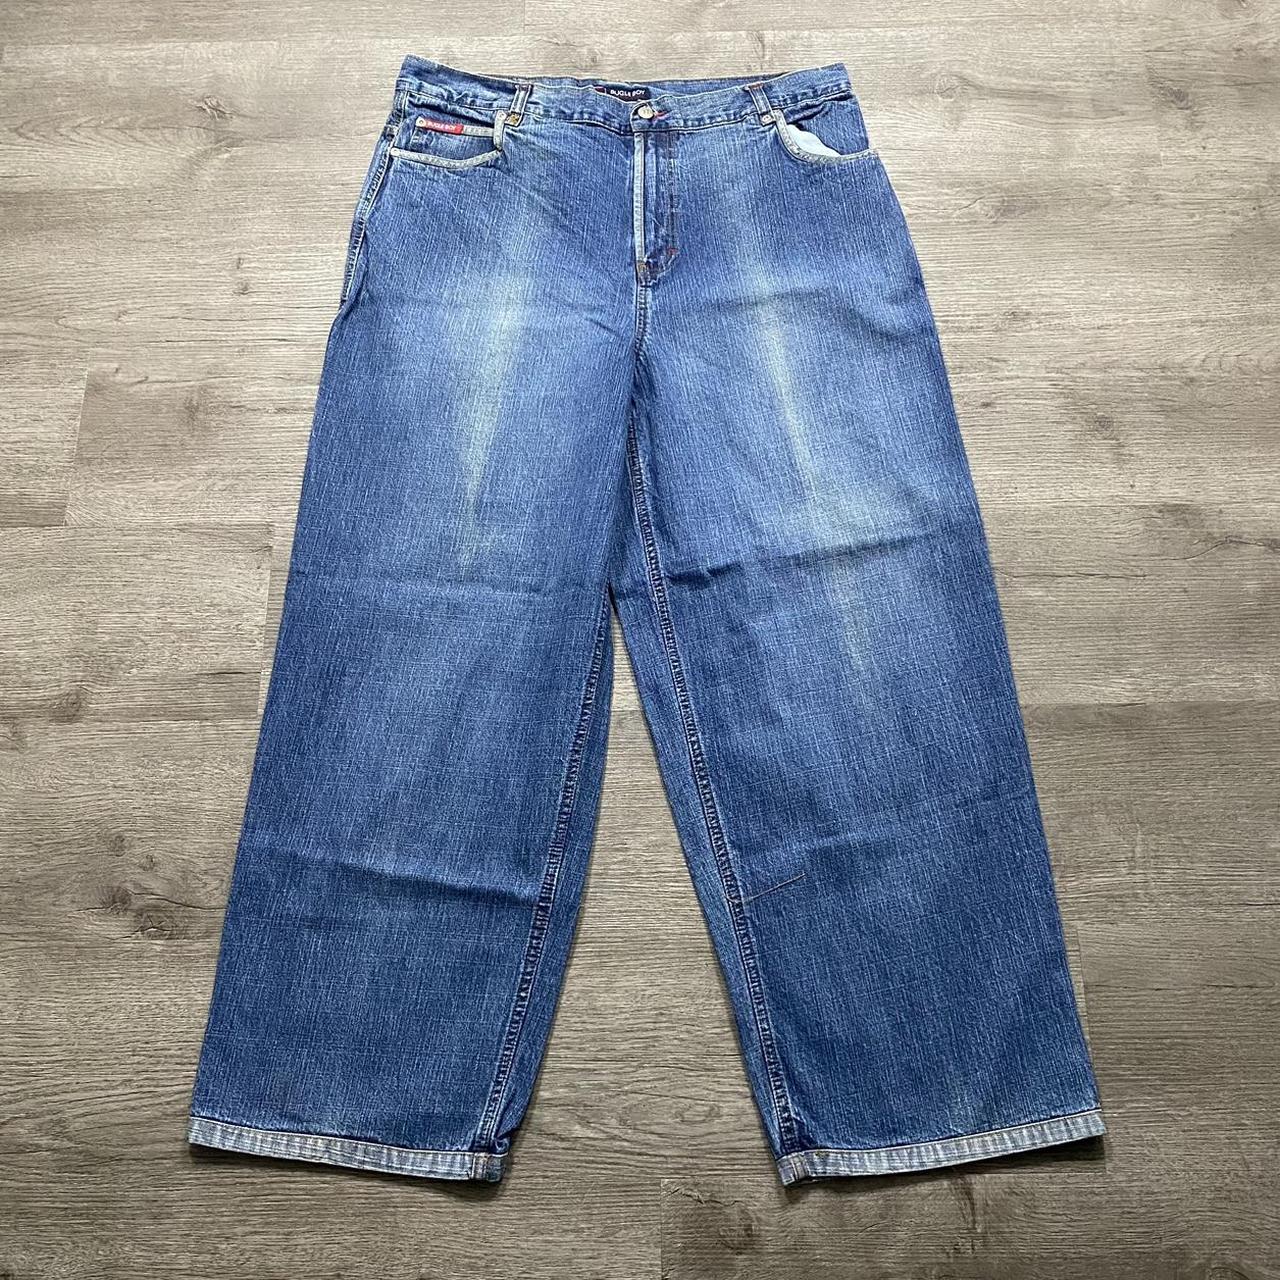 Bugle Boy Y2K Streetwear Baggy Blue Denim Jeans Size... - Depop